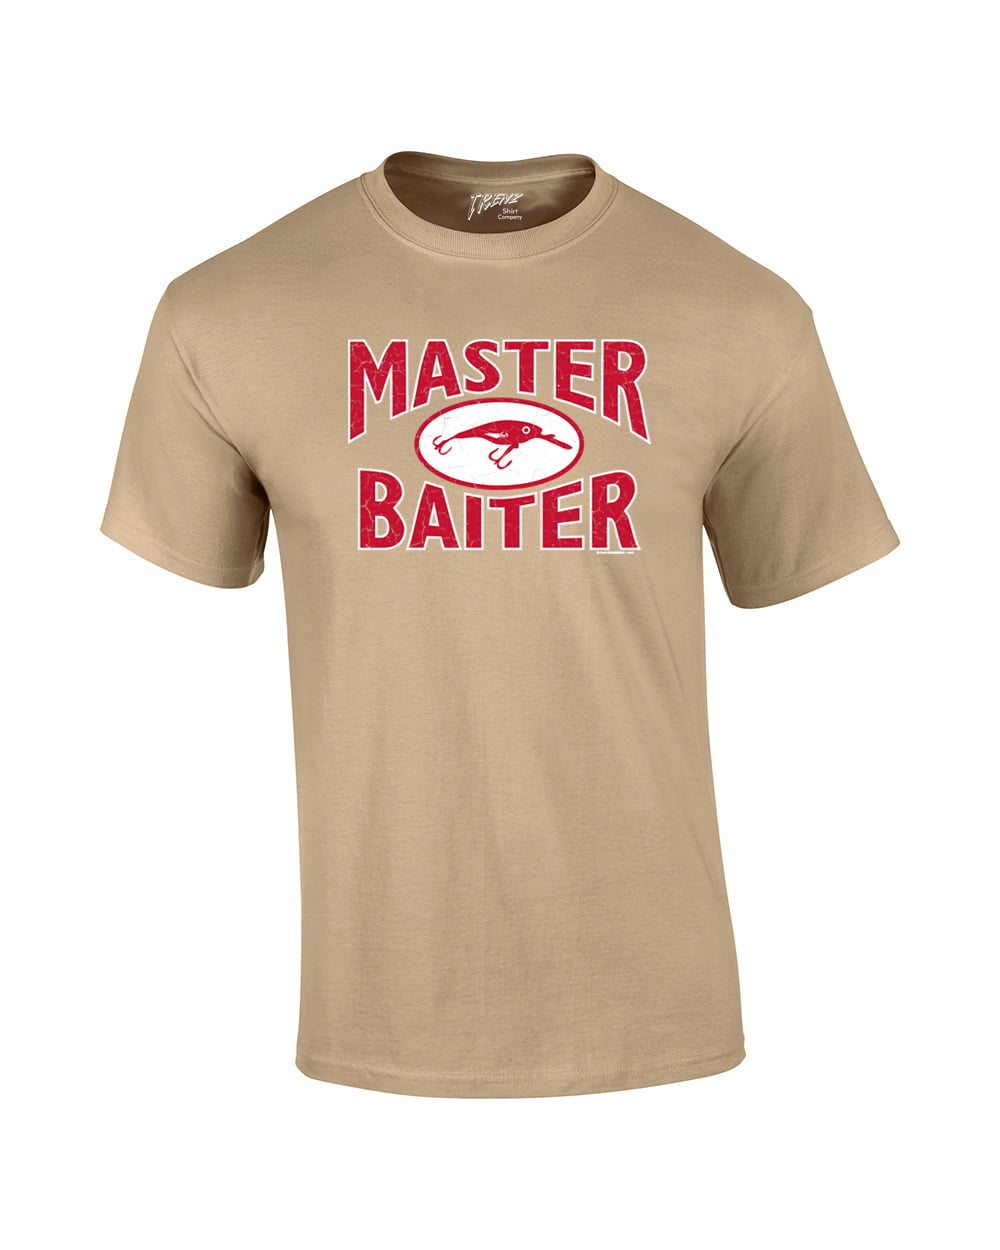 Fishing Short Sleeve T-shirt Master Baiter Hook Lure-lightblue-XXXL 